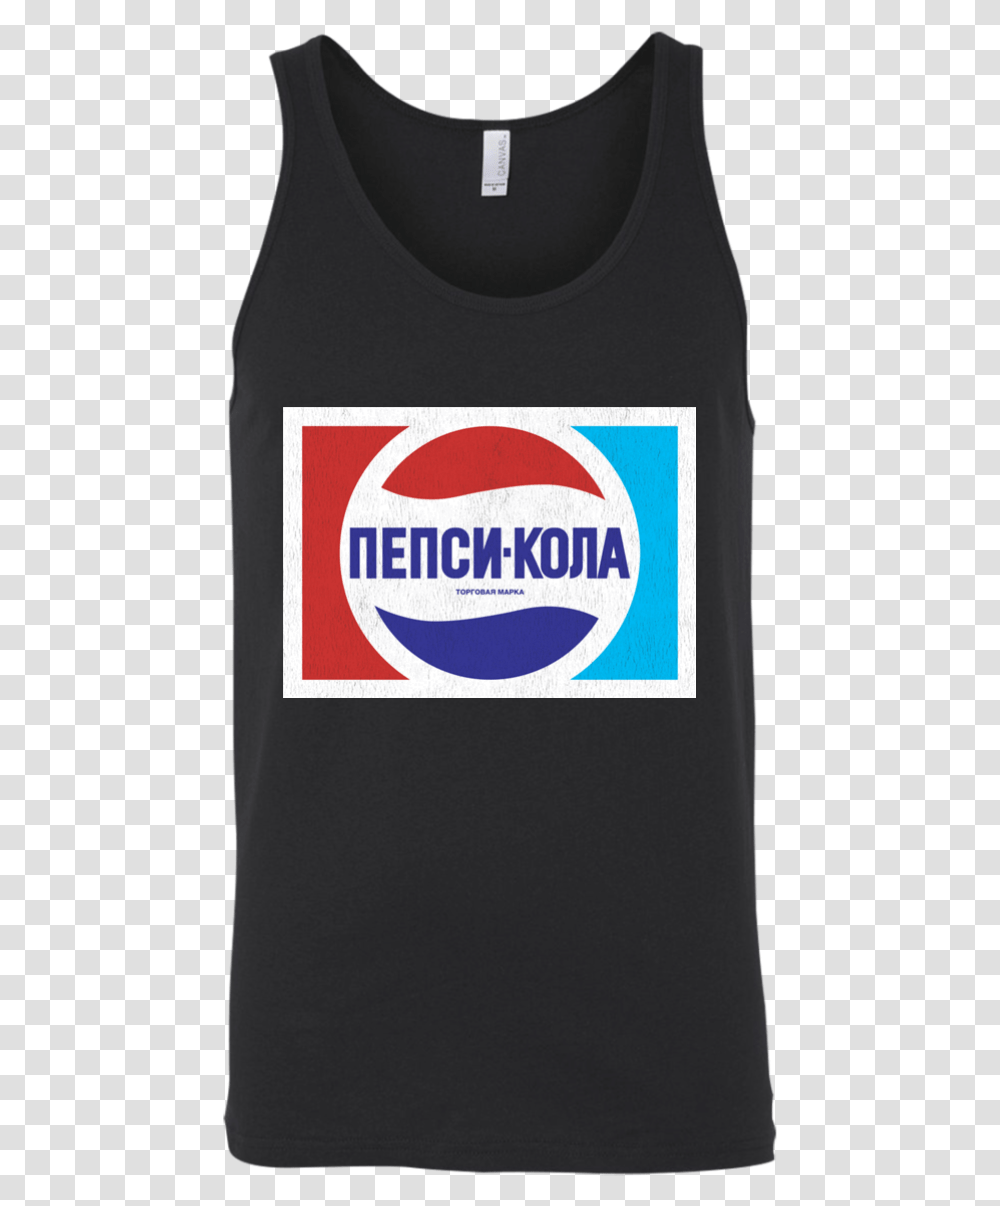 Russia Ussr Soviet Union Pepsi Cola Retro Logo Pepsi, Label, Text, Soda, Beverage Transparent Png